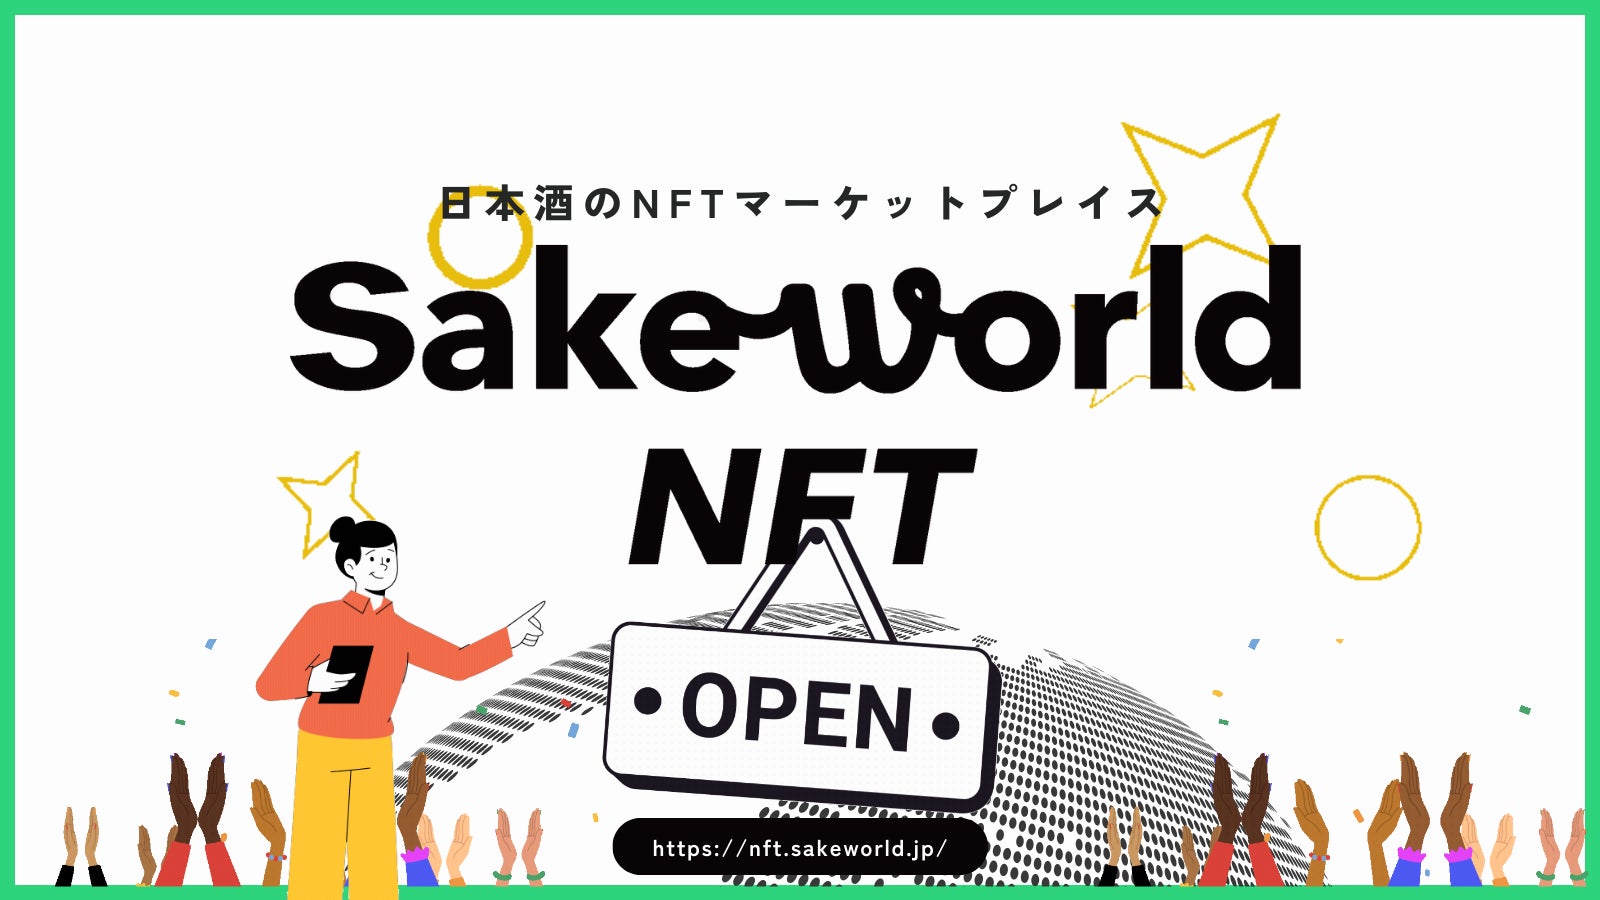 日本酒NFTマーケットプレイス「Sake World NFT」が2億7500万円を新規調達。サービス拡充に向けて本格稼働